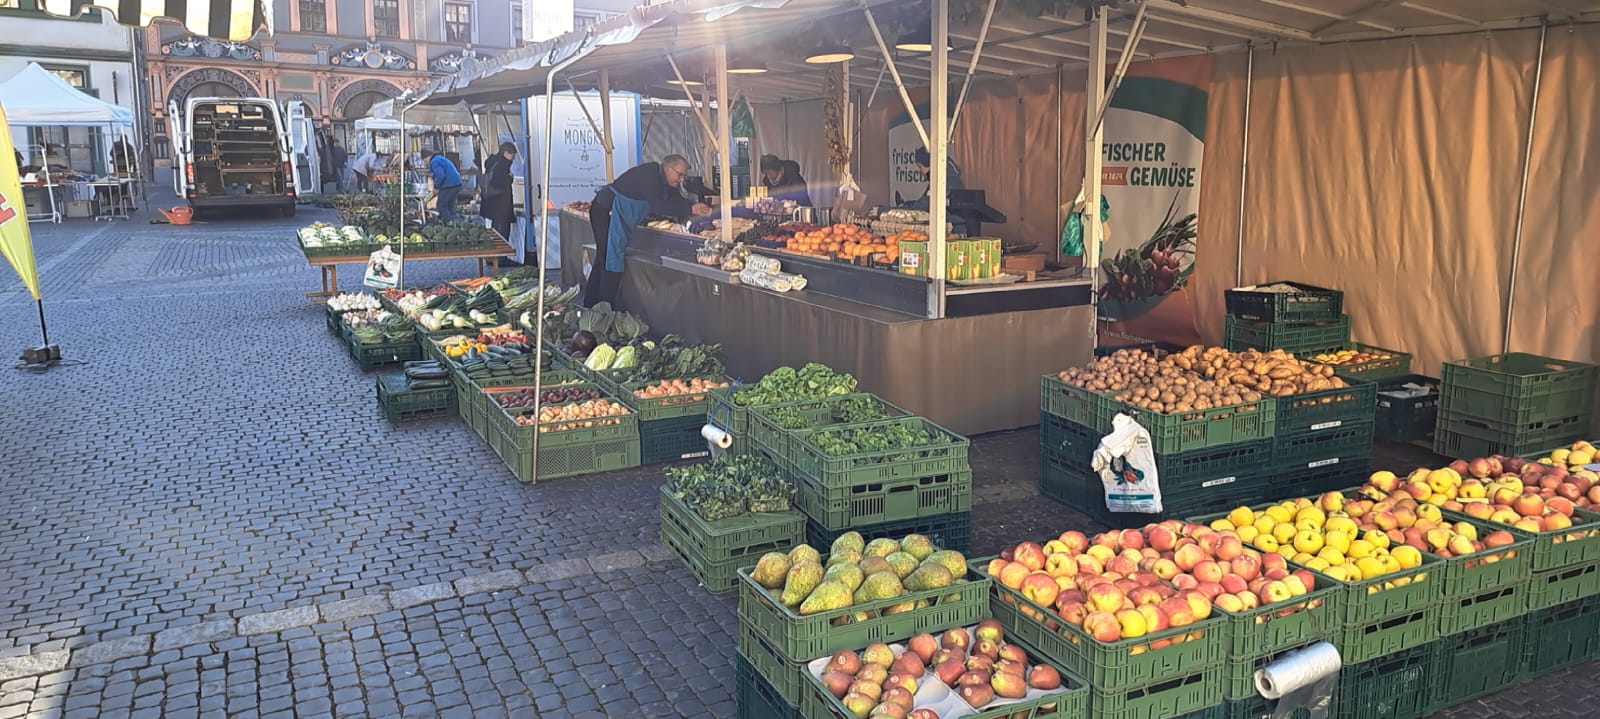 Fischer Gemüse Marktstand in Weimar auf dem Rathausplatz